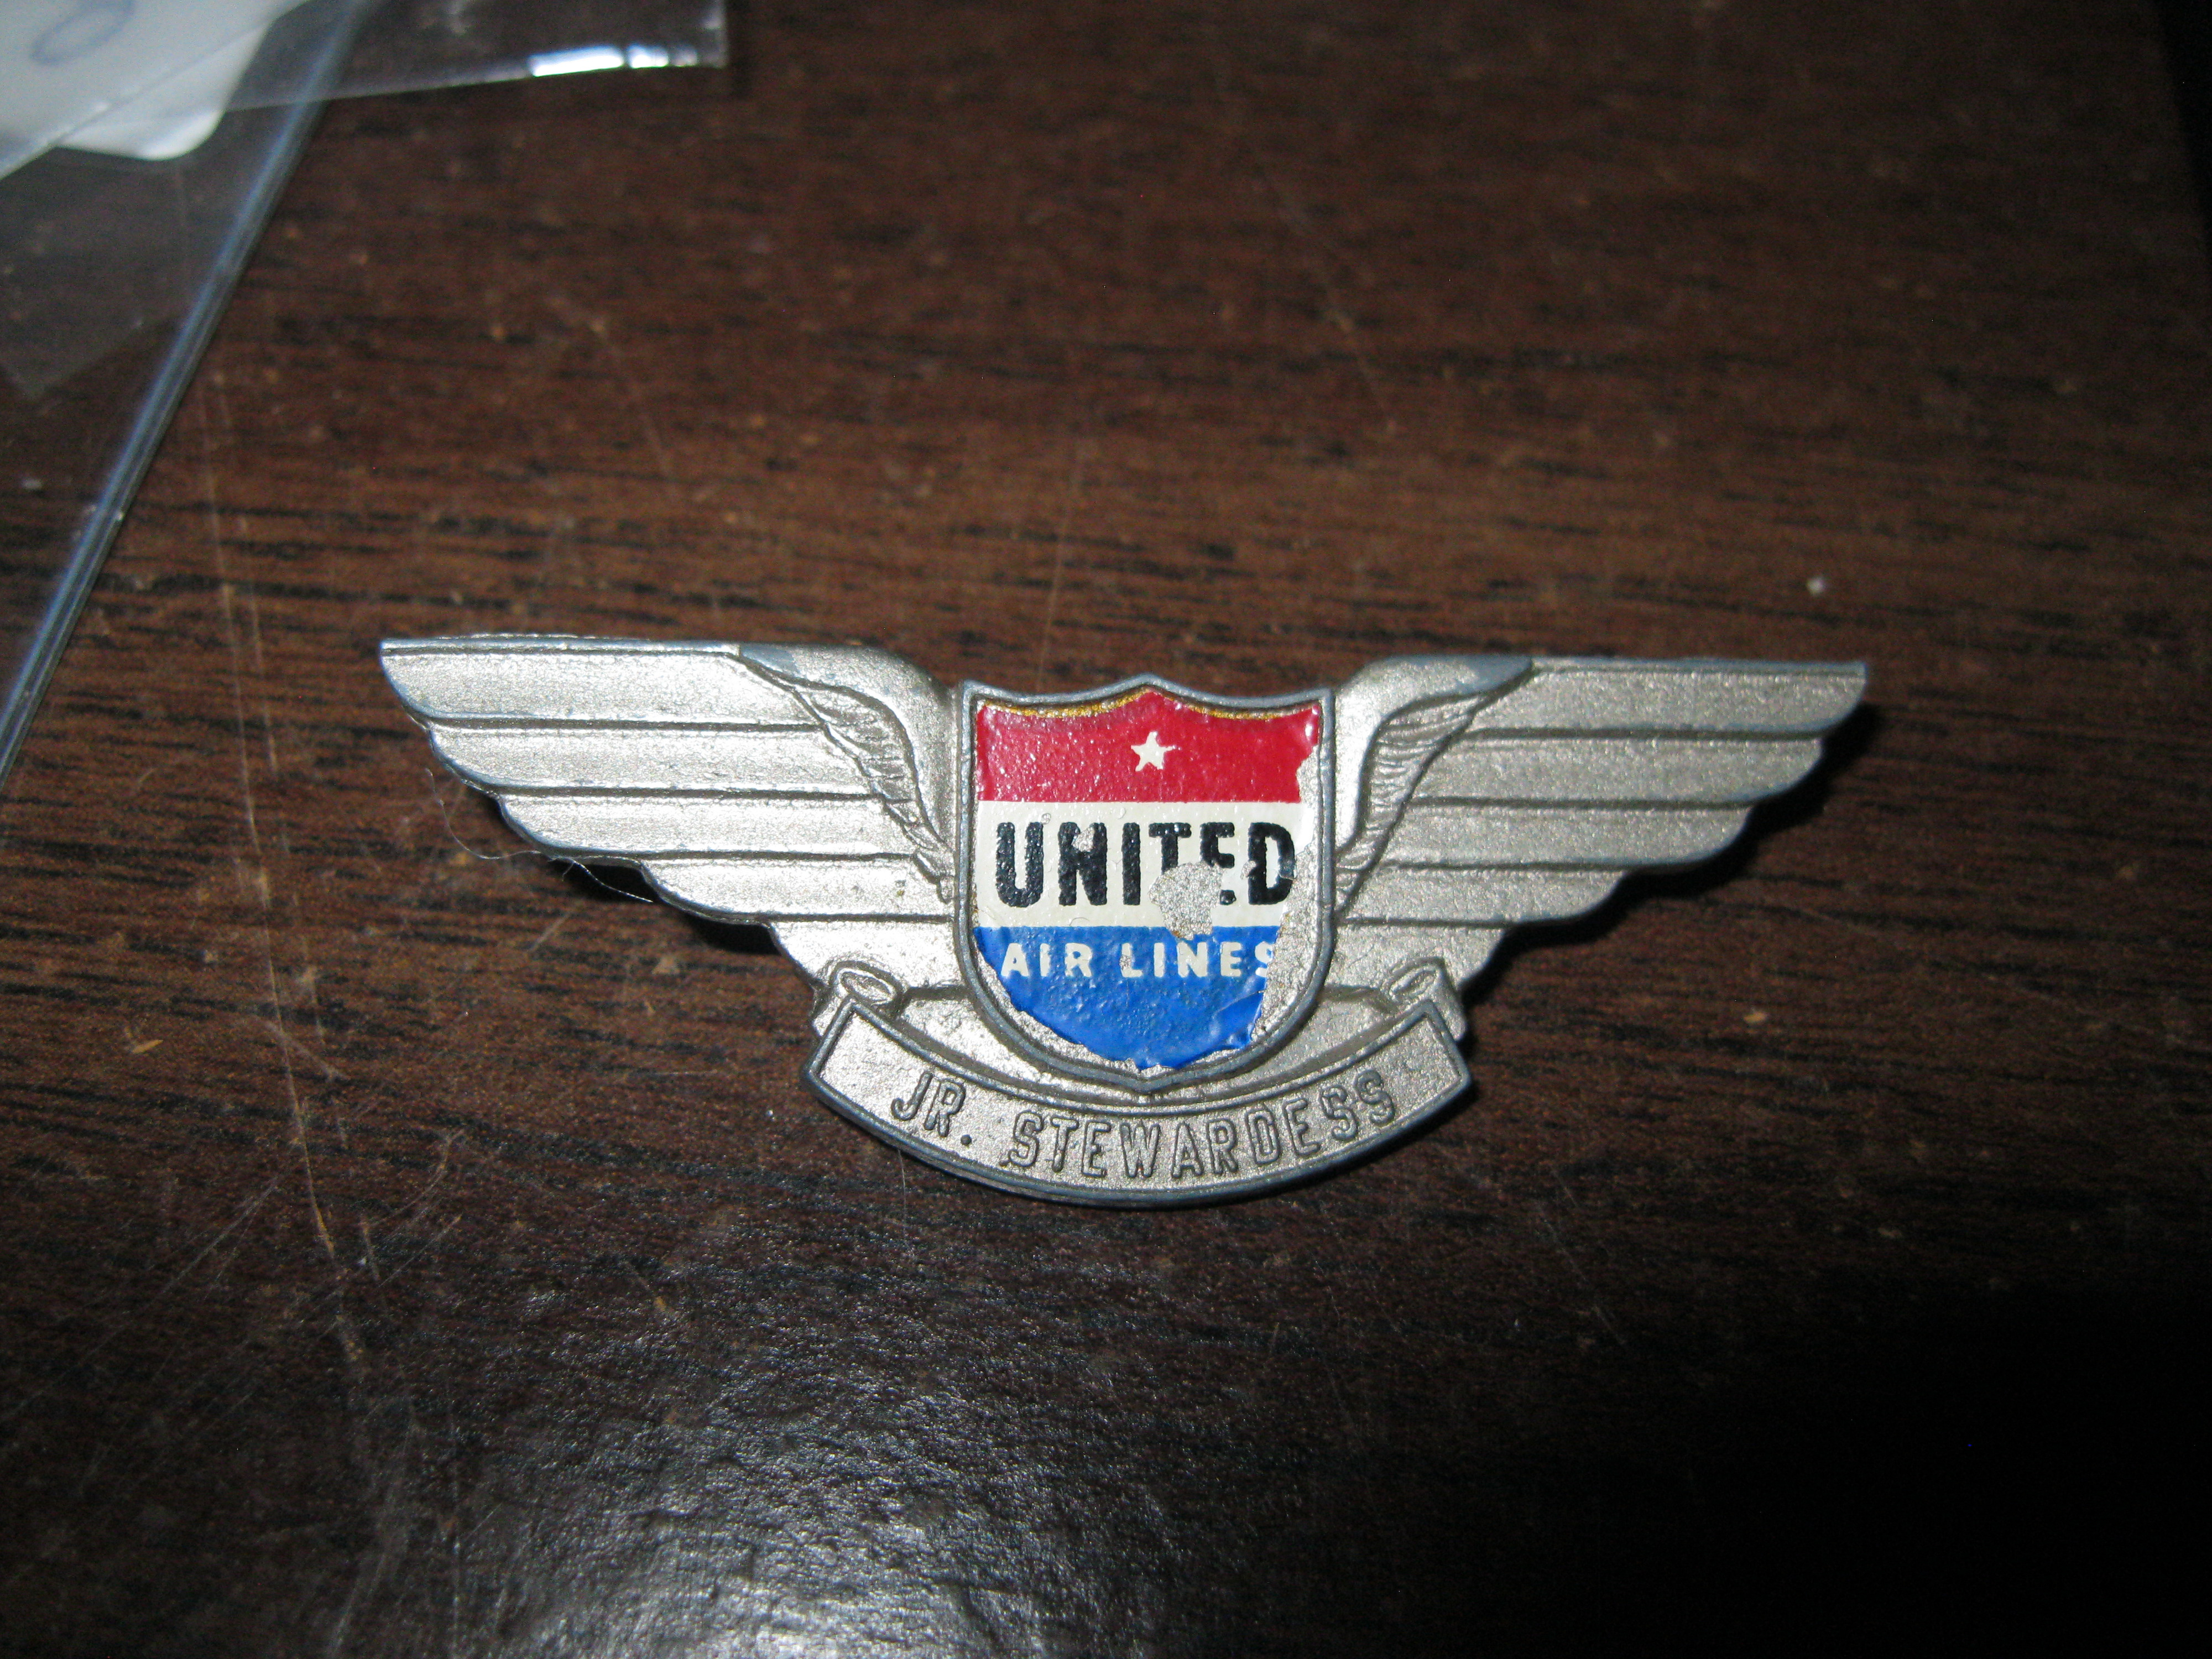 United Air lines Jr. Stewardess larger metal wings